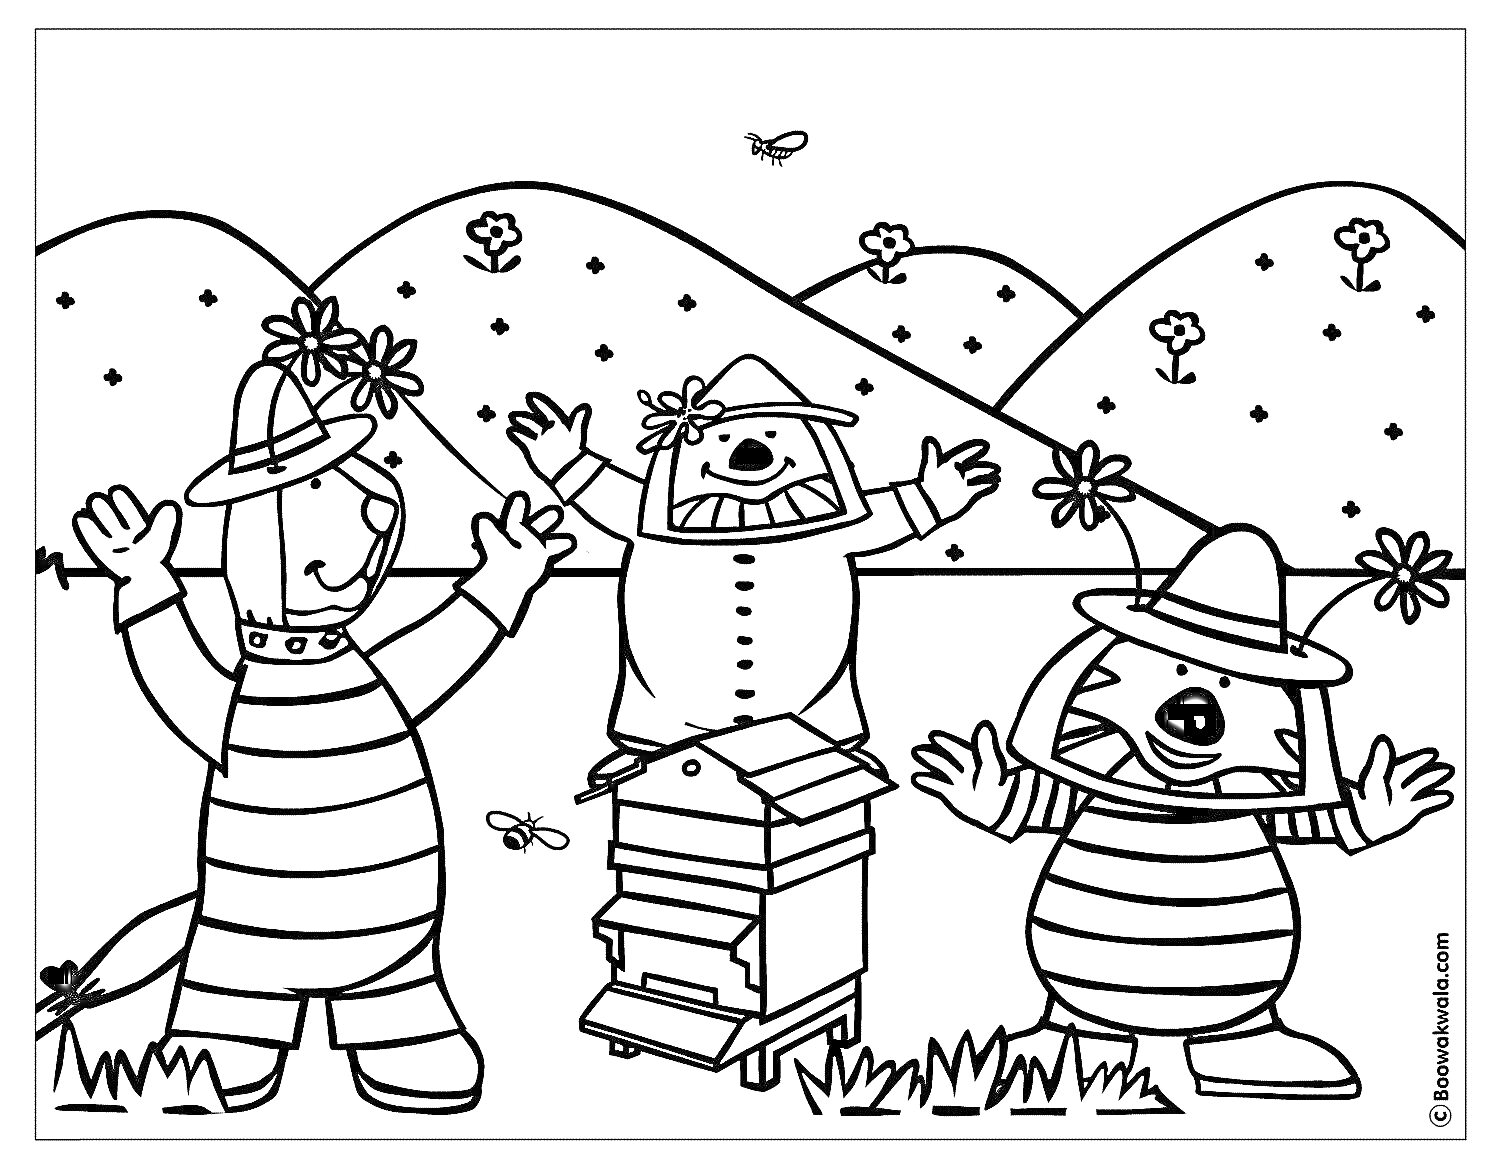 Раскраска Пчеловодство: трое персонажей в шляпах, улей, горы, цветы, бабочка и пчелы